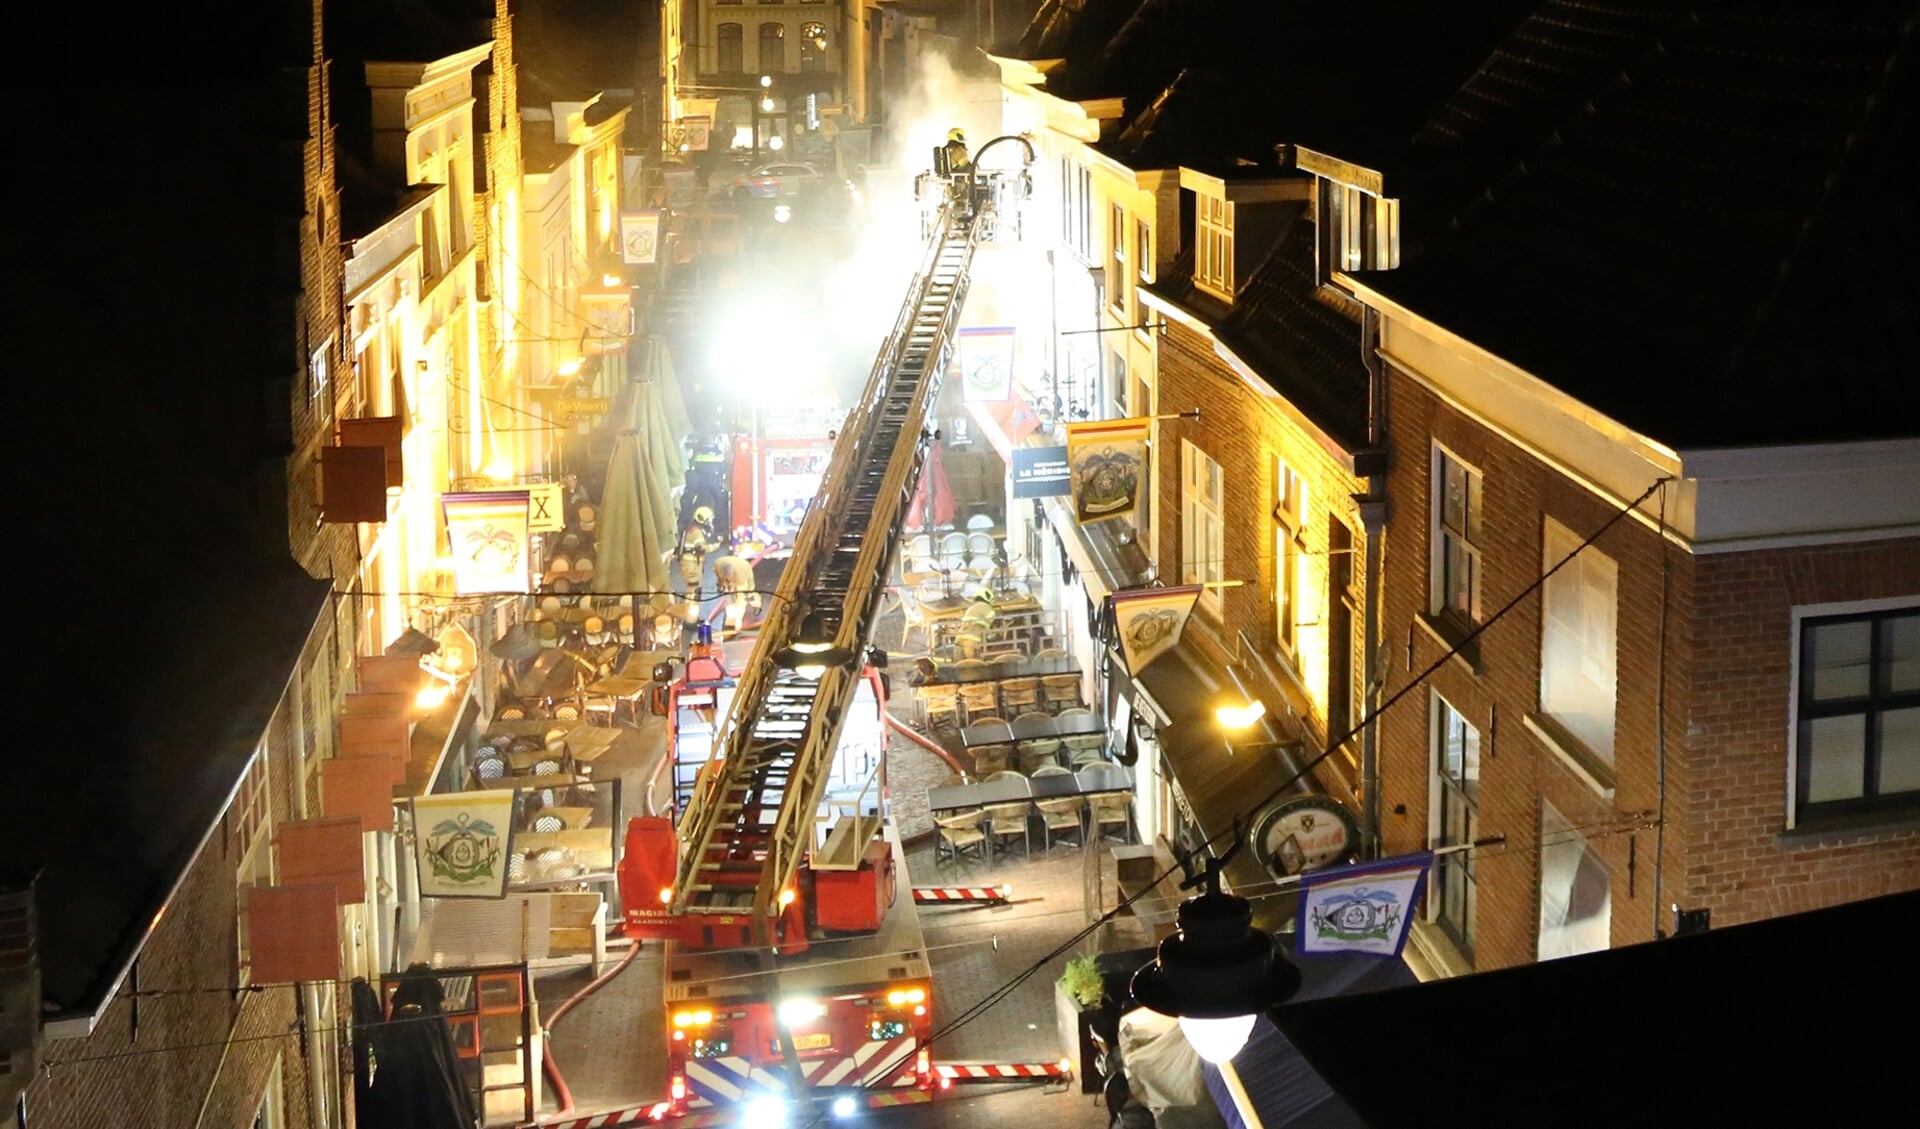 Vannacht heeft er korte tijd een brand gewoed boven Bistro Tante Pietje aan de Korte Putstraat in het centrum van Den Bosch.